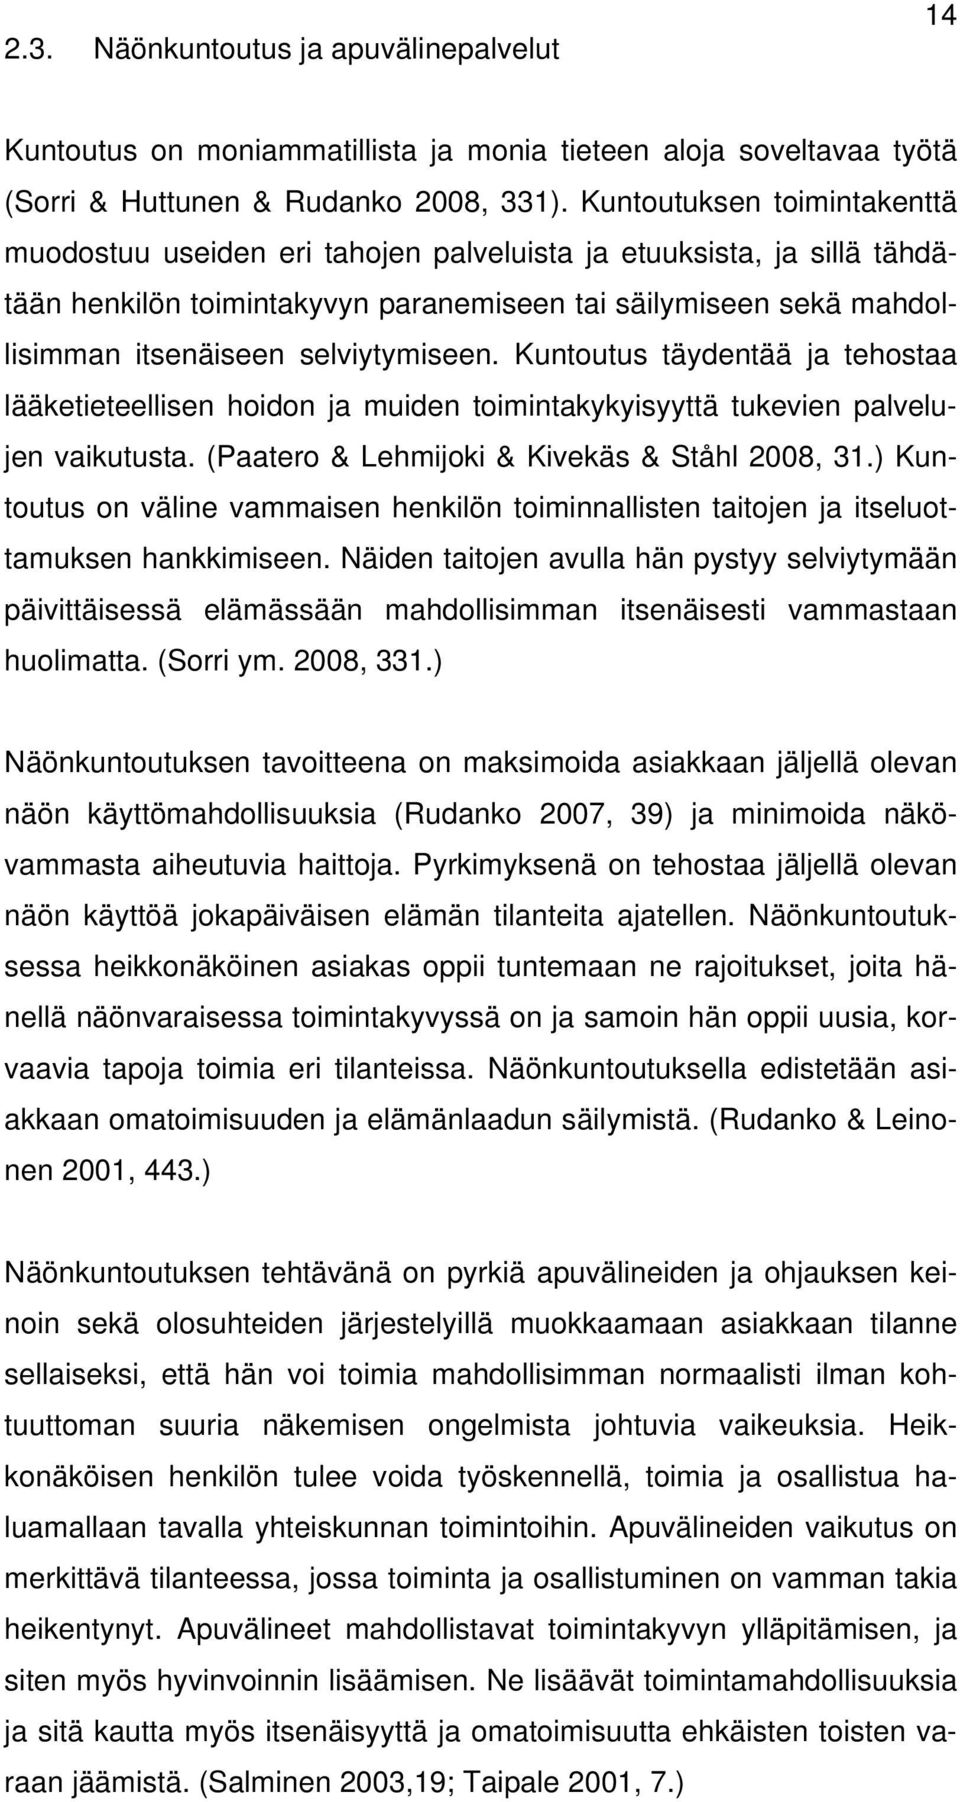 selviytymiseen. Kuntoutus täydentää ja tehostaa lääketieteellisen hoidon ja muiden toimintakykyisyyttä tukevien palvelujen vaikutusta. (Paatero & Lehmijoki & Kivekäs & Ståhl 2008, 31.